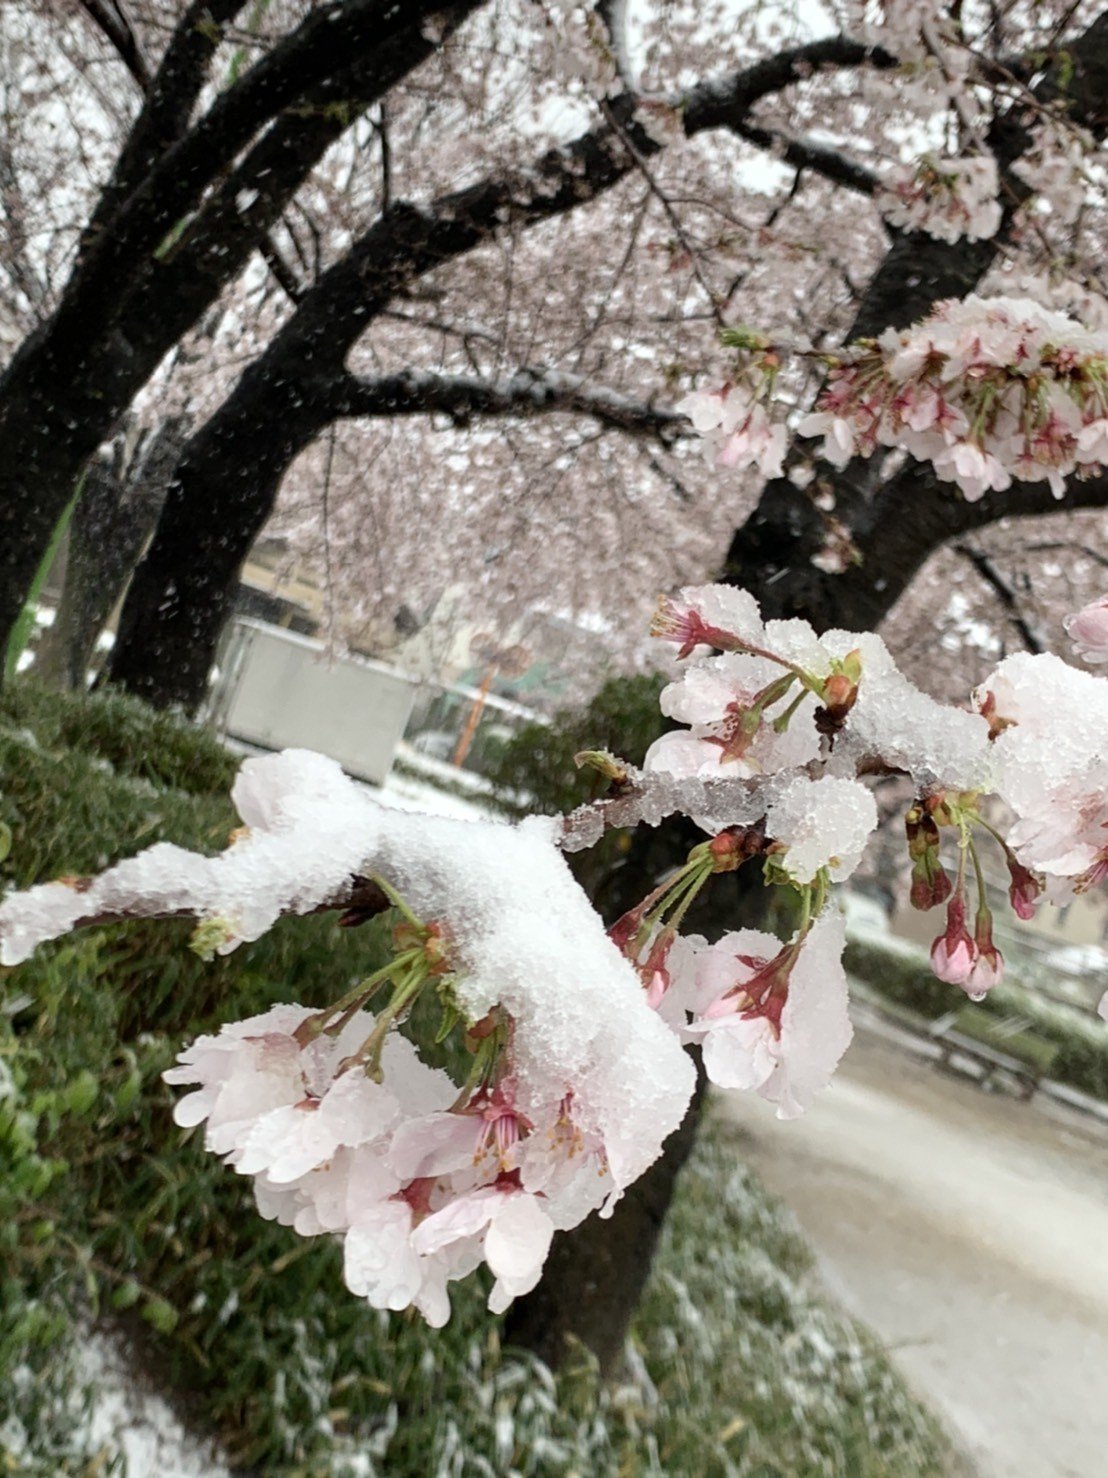 雪と桜 はじめて見る風景だった 大きな桜の樹が並んでいるところにぽたぽたと雪が降り積もっていて 幻想的 でうっとりした 三島由紀夫 春の雪 の世界のようだ 月組 春の雪 の舞台も思い出す 舞台に咲く満開の Makiko Ohishi Note